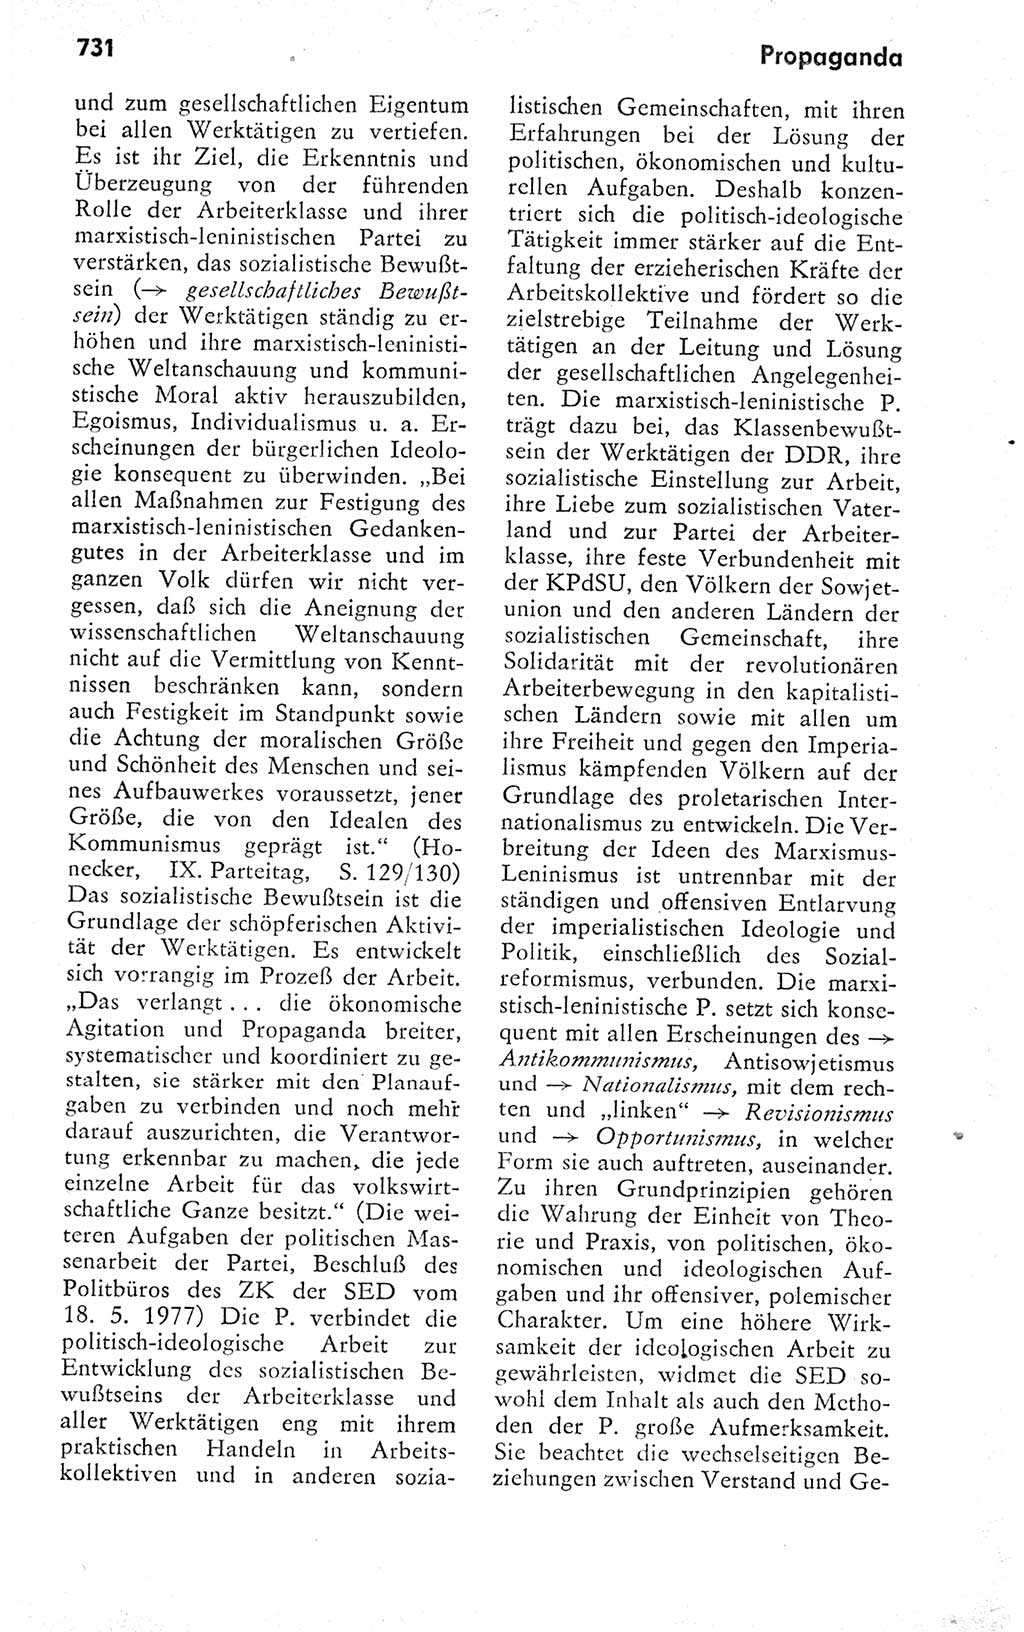 Kleines politisches Wörterbuch [Deutsche Demokratische Republik (DDR)] 1978, Seite 731 (Kl. pol. Wb. DDR 1978, S. 731)